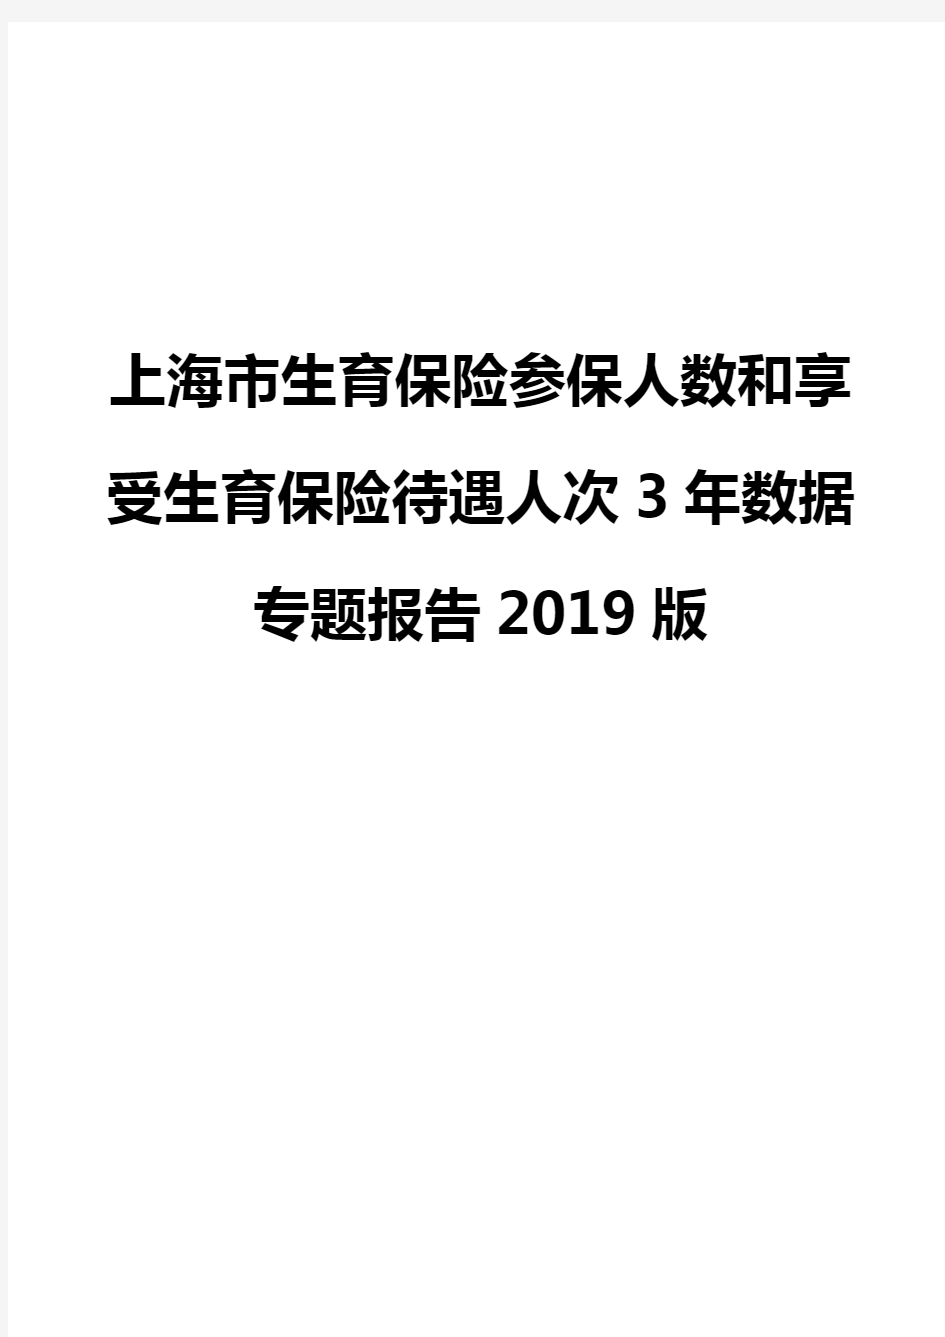 上海市生育保险参保人数和享受生育保险待遇人次3年数据专题报告2019版